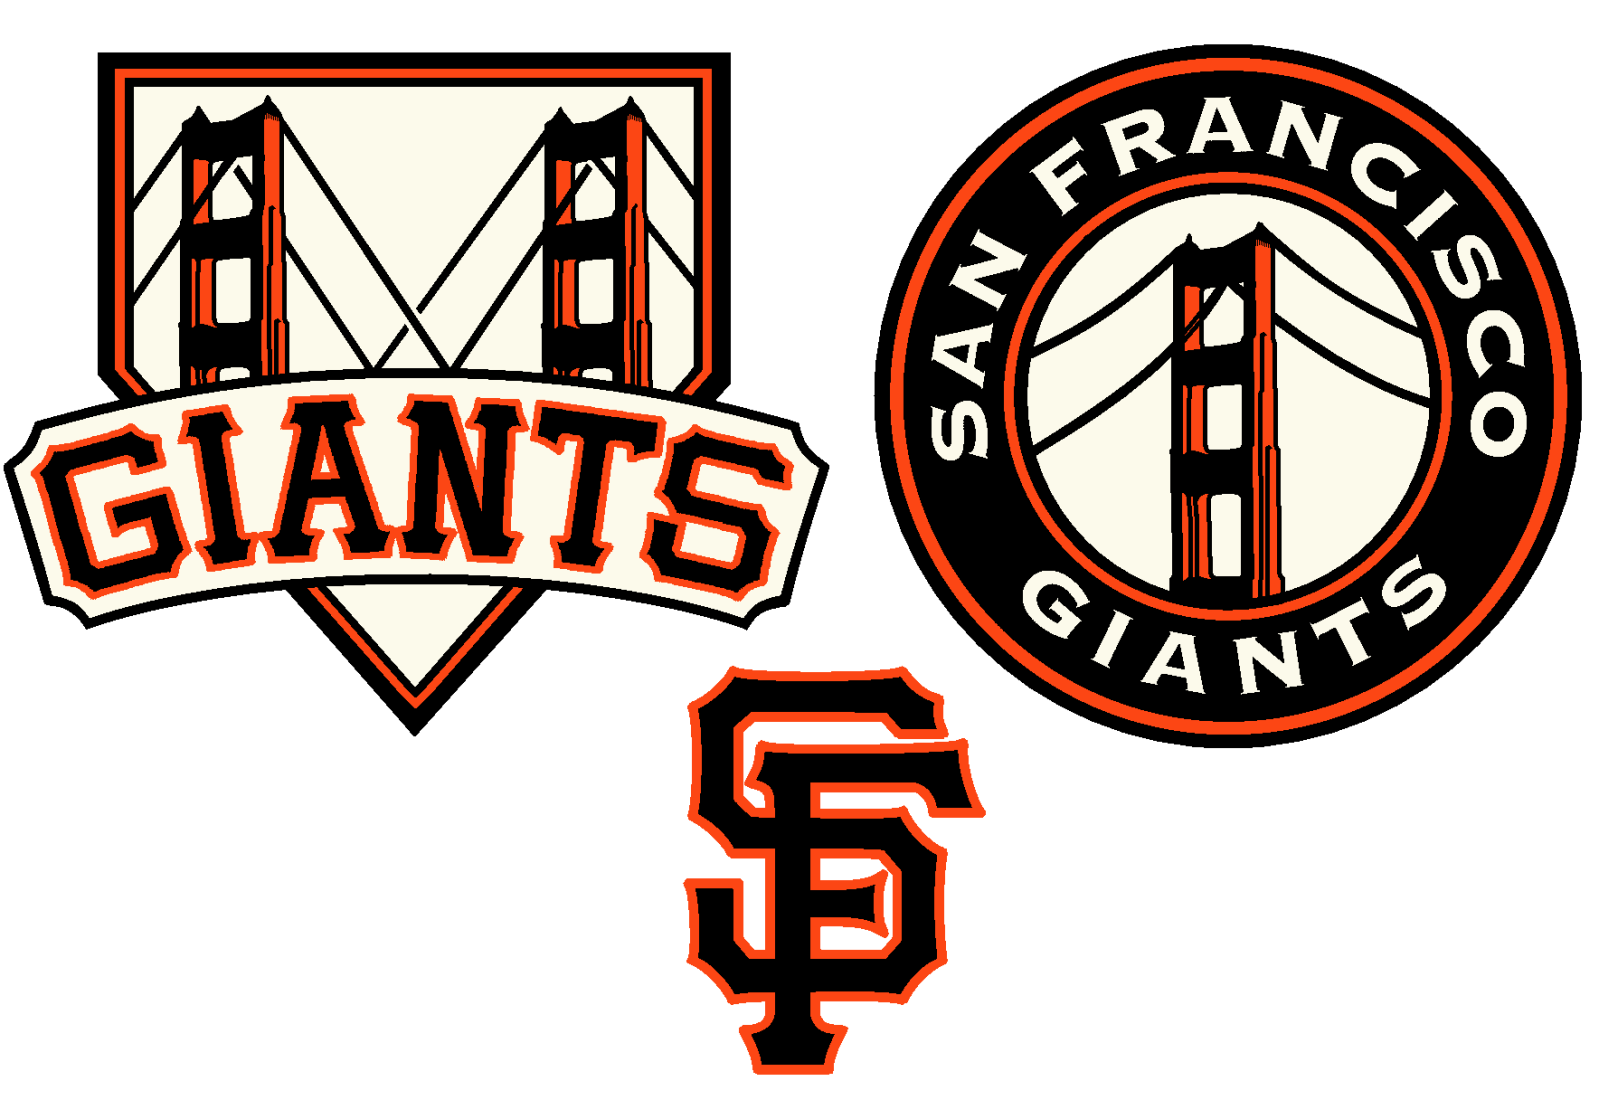 sf giants logo concept - Clip Art Library